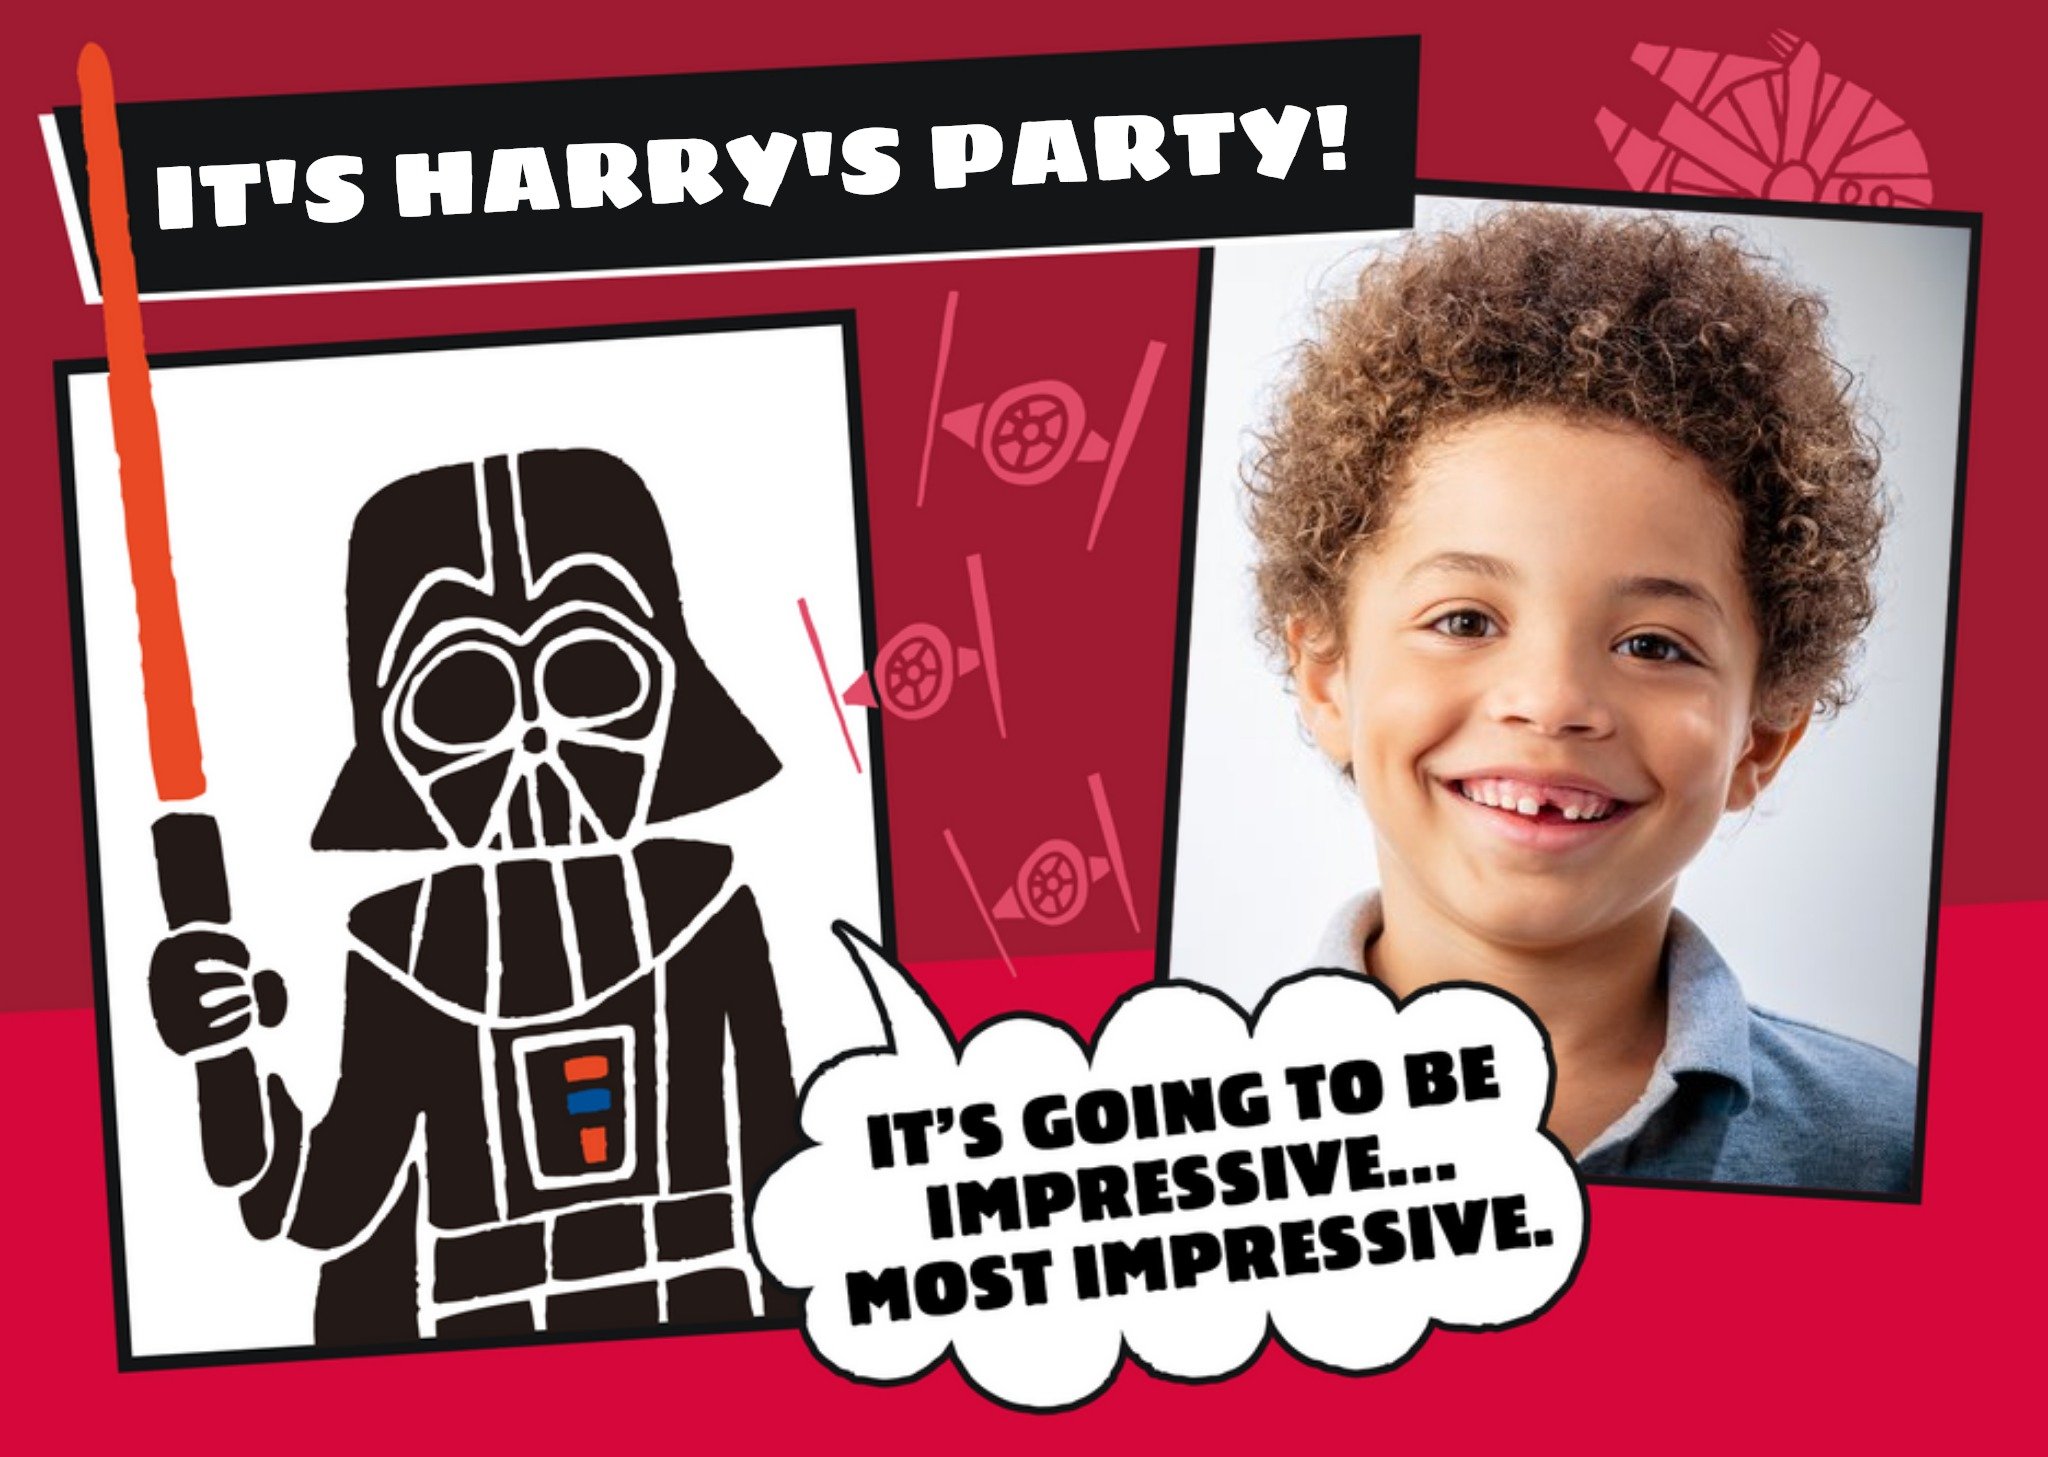 Disney Star Wars Darth Vader Birthday Party Invitation, Standard Card